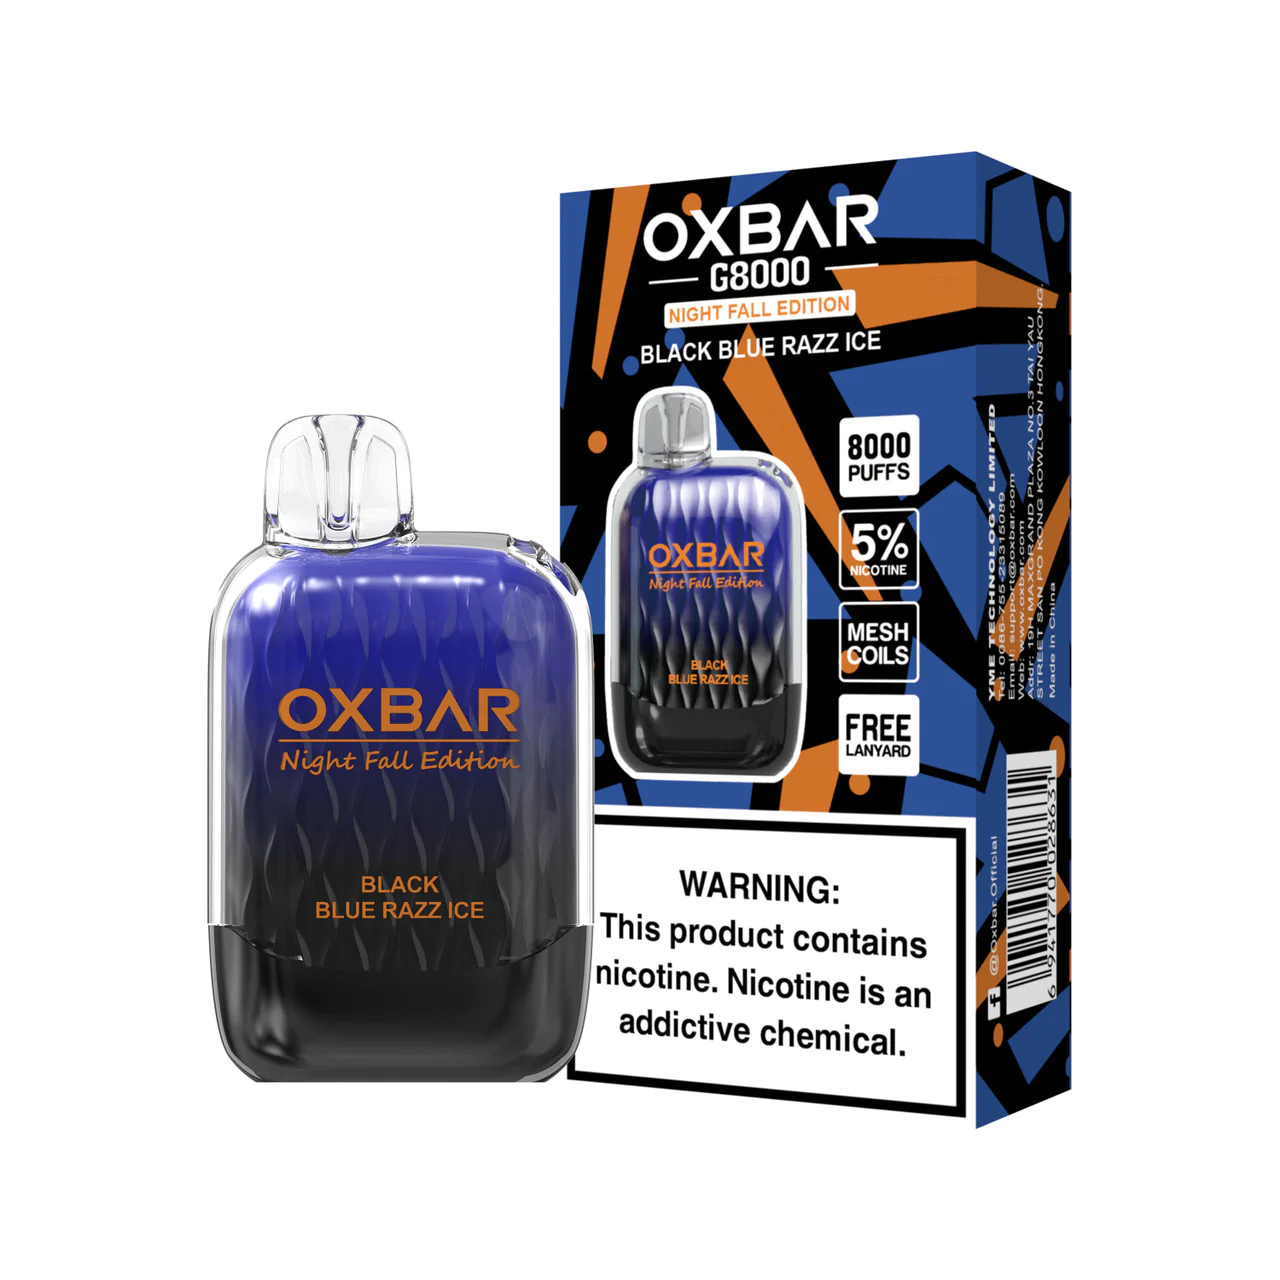 OXBAR G8000 Night Fall Edition Disposable E Cigarette